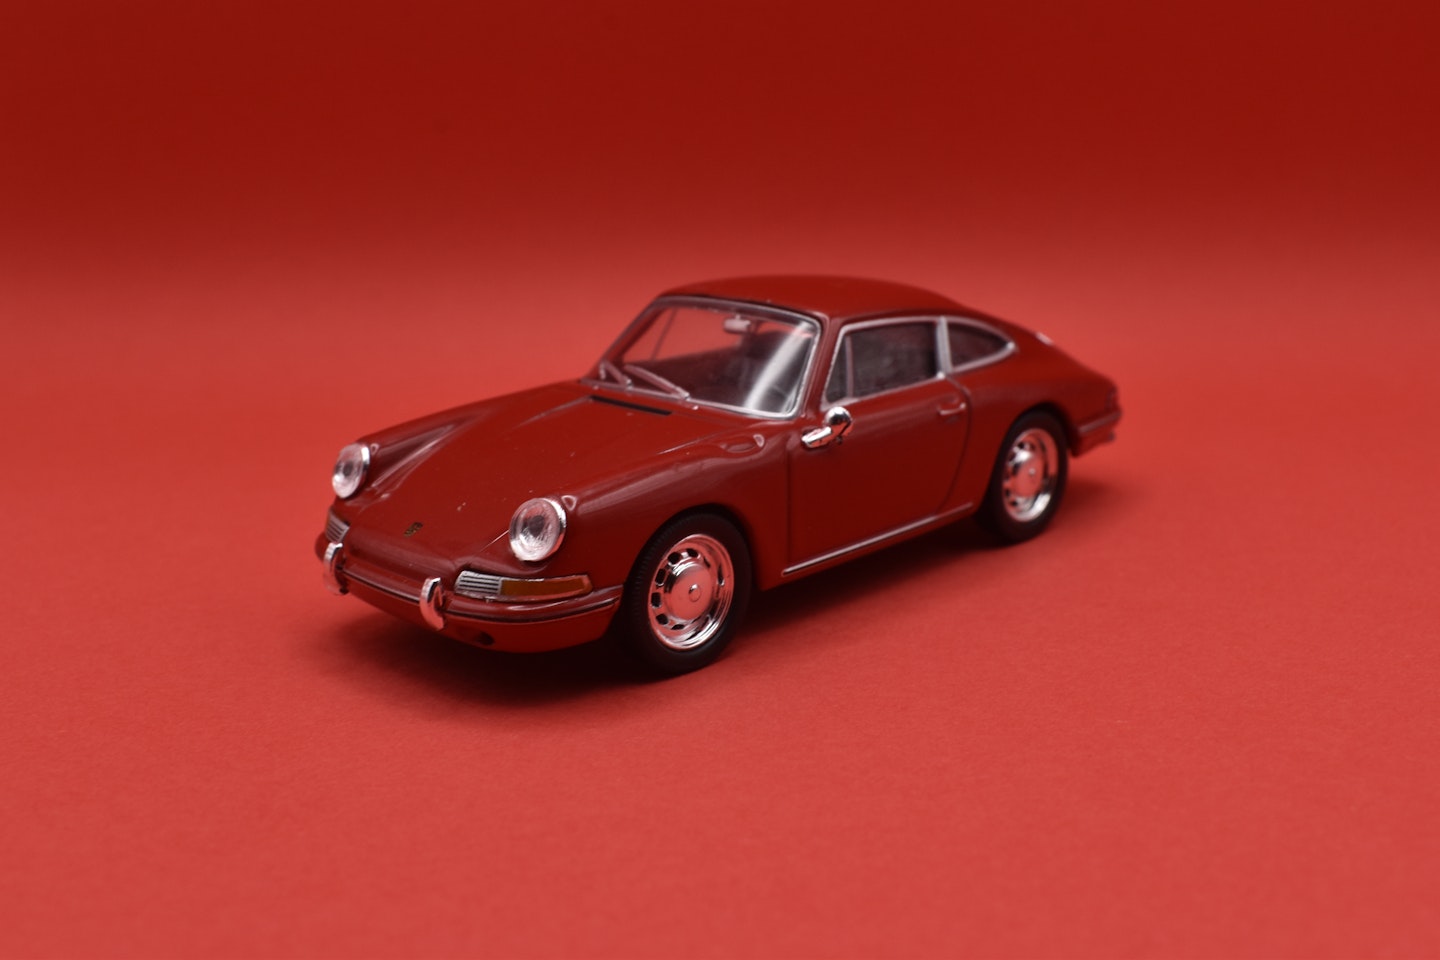 The Porsche 911 model